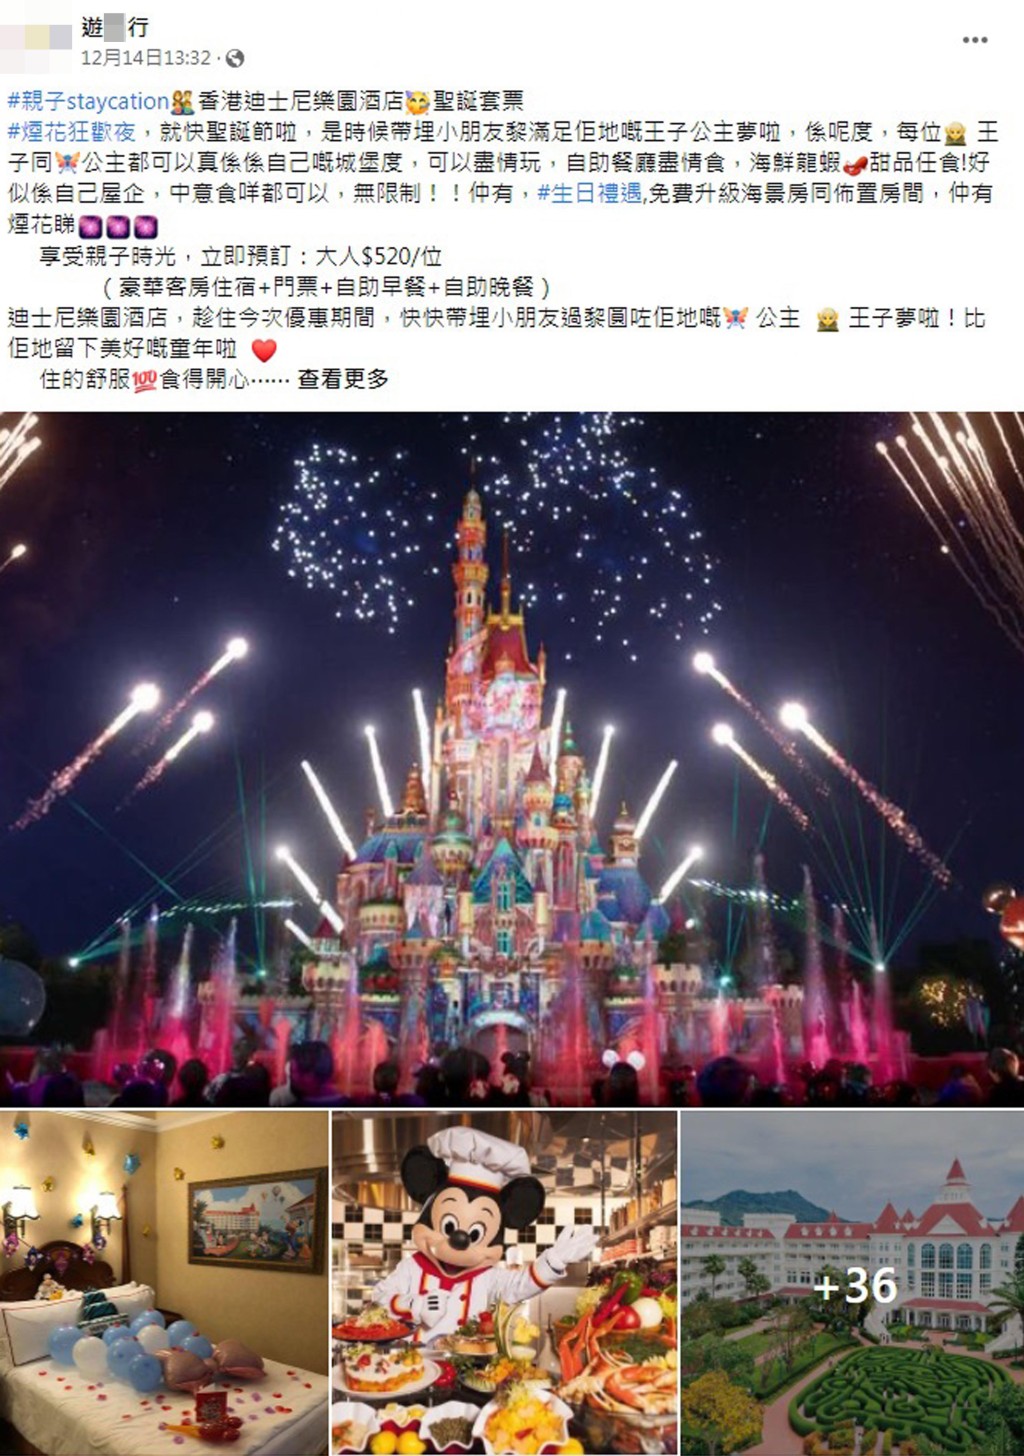 「游X行」的Facebook专页早前推介代订香港迪士尼乐园酒店及圣诞套票。